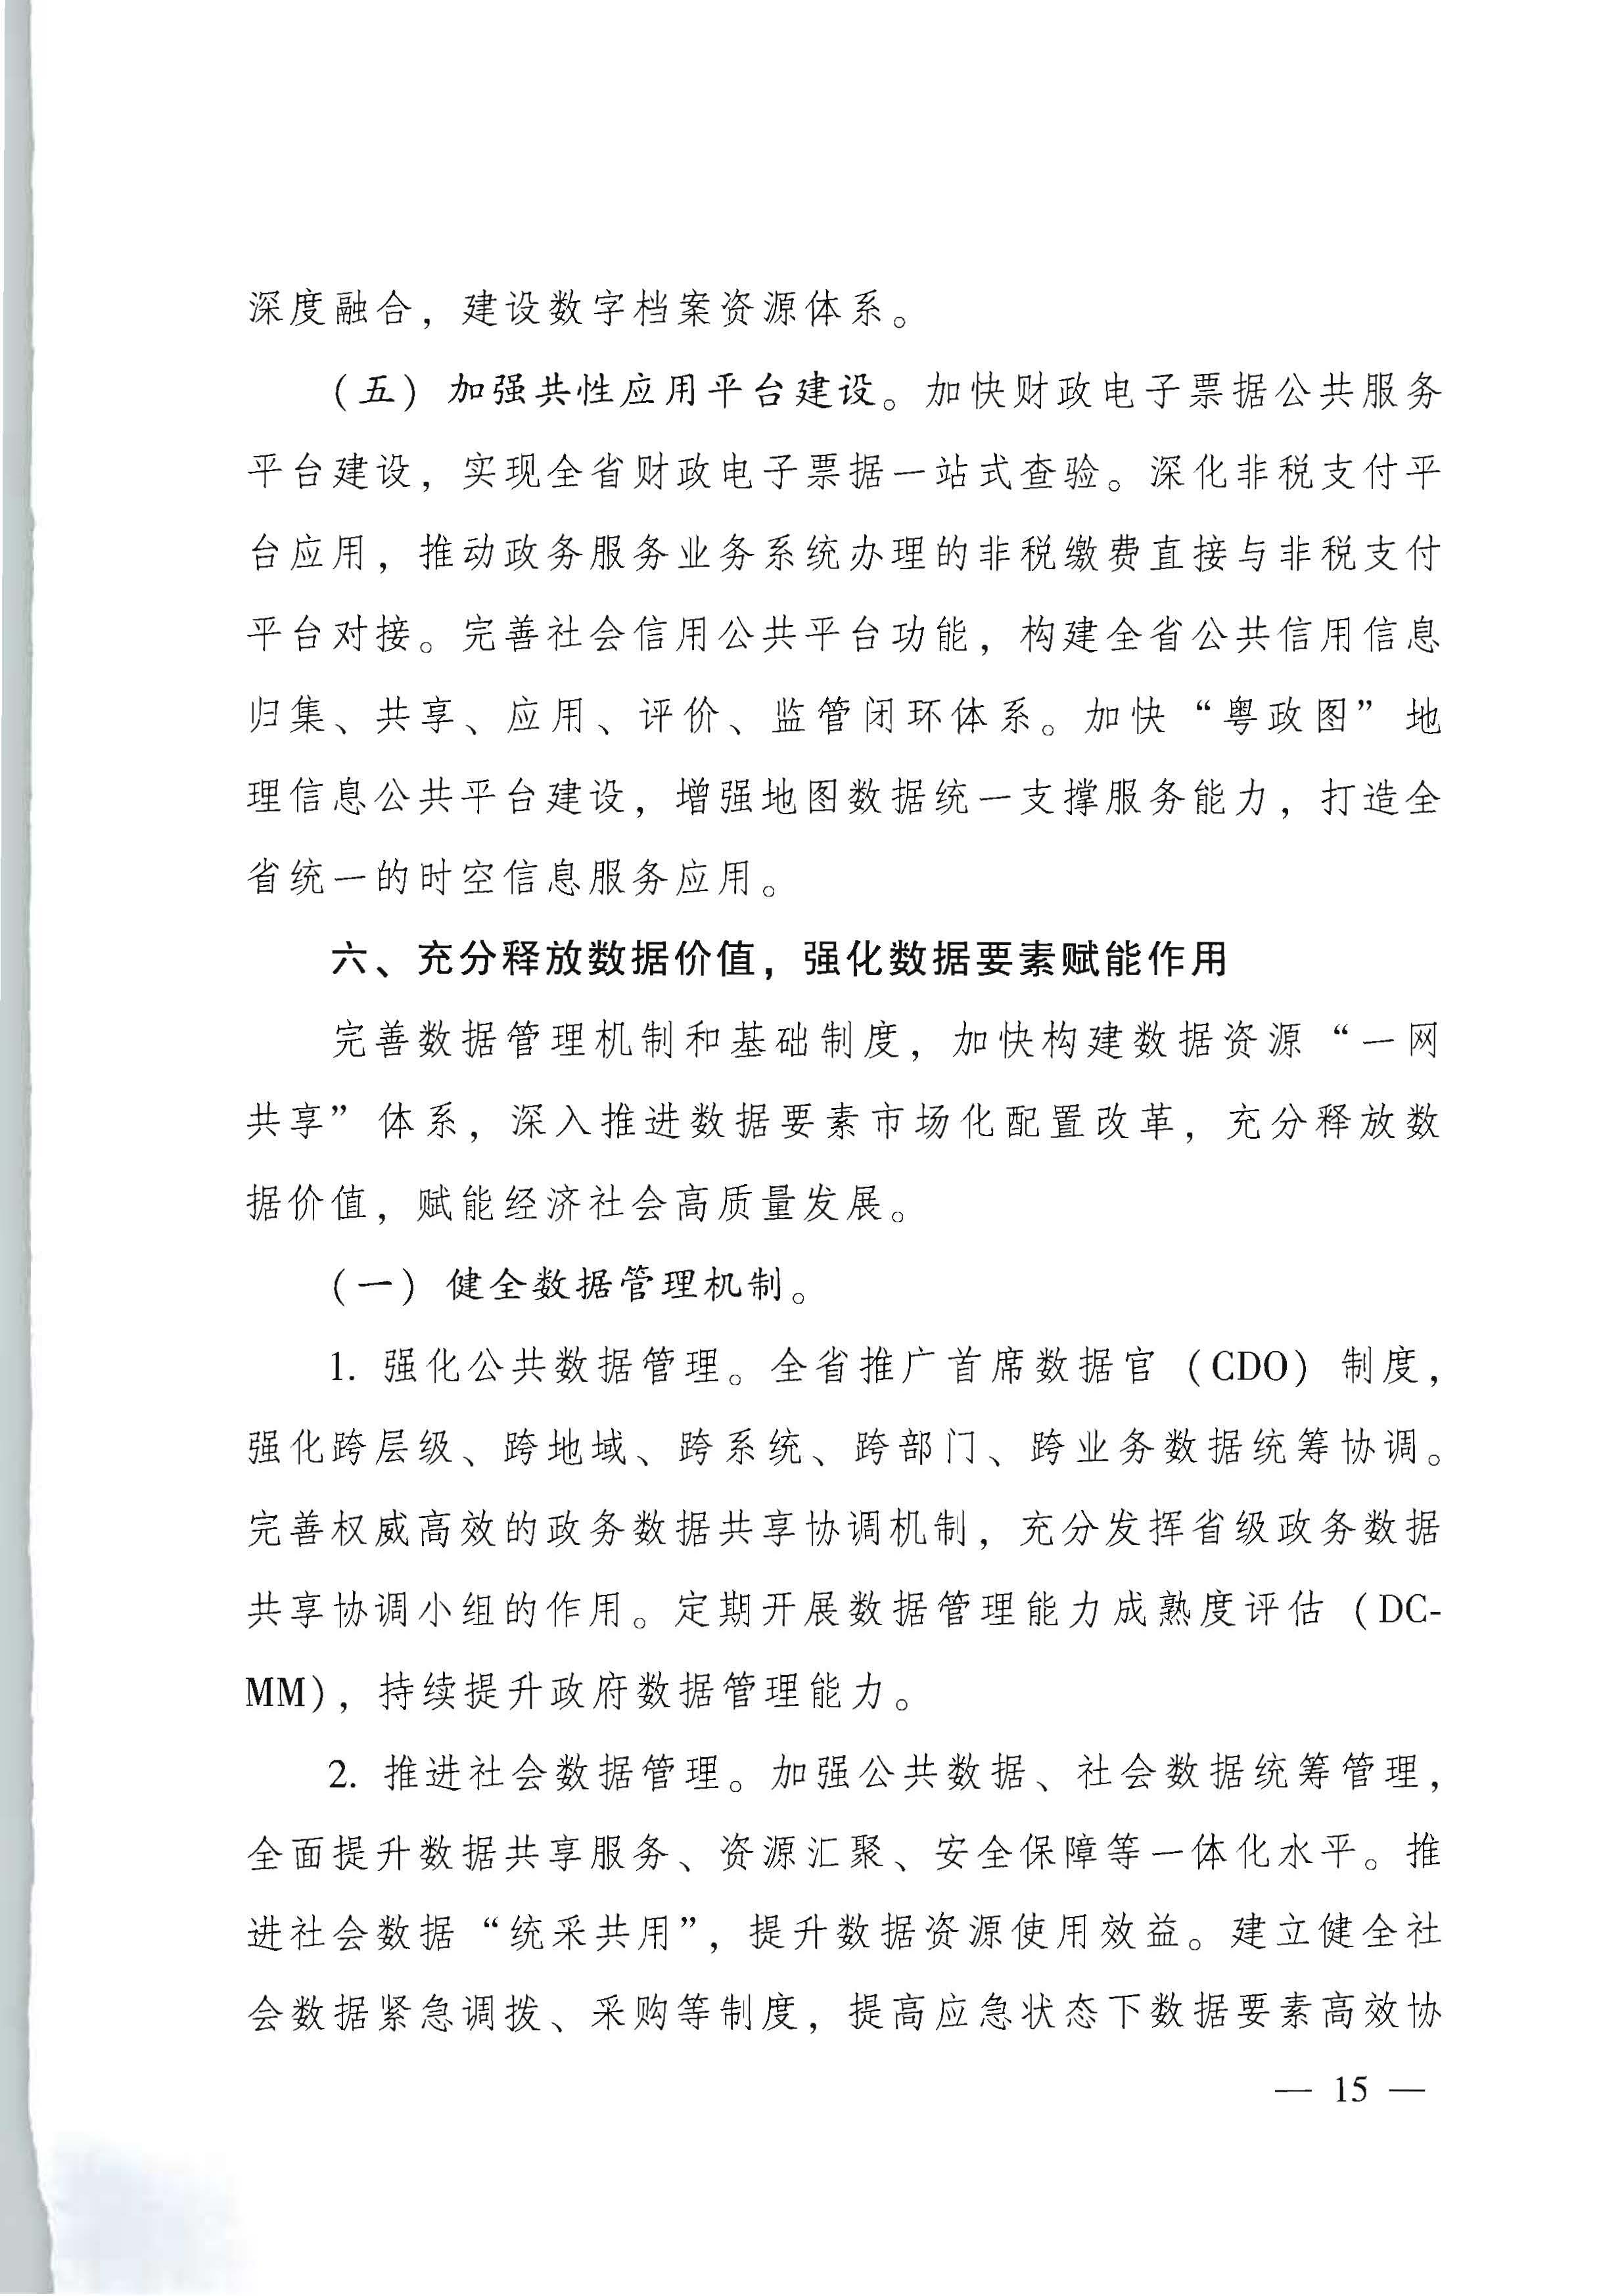 广东省人民政府关于进一步深化数字政府改革建设的实施意见_页面_15.jpg